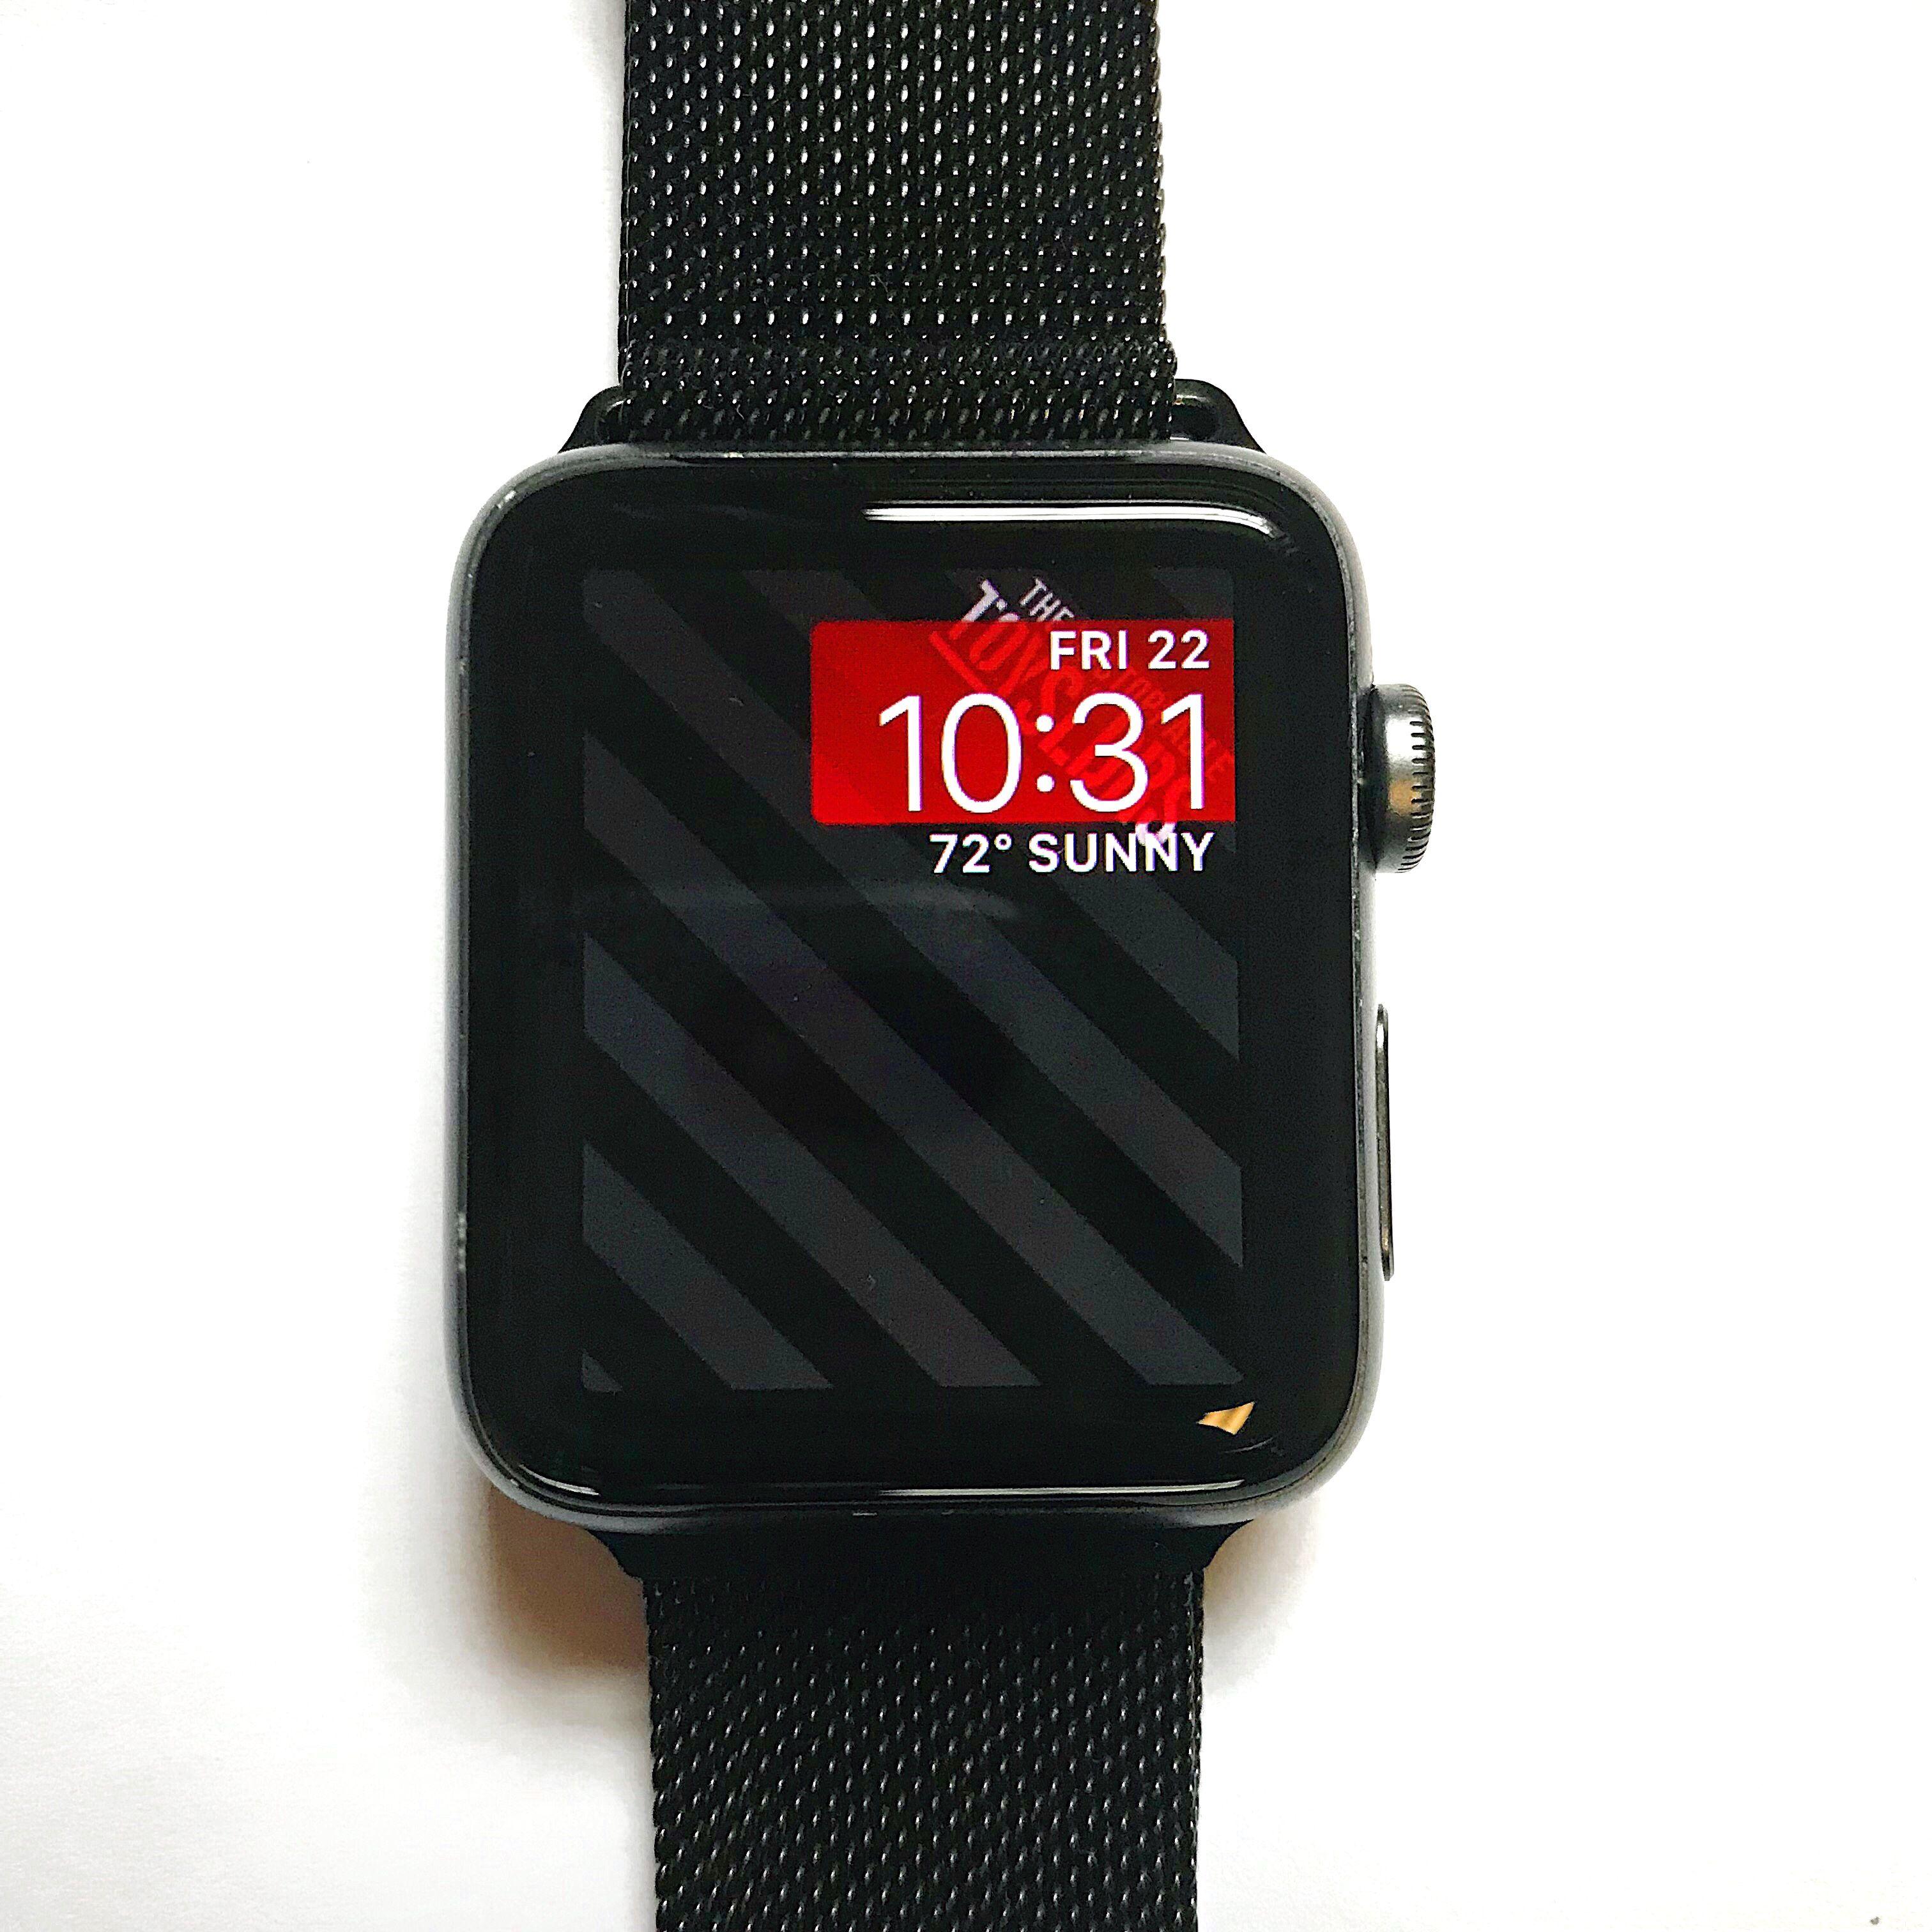 Tổng hợp Hình Nền Apple Watch giá rẻ bán chạy tháng 72023  BeeCost